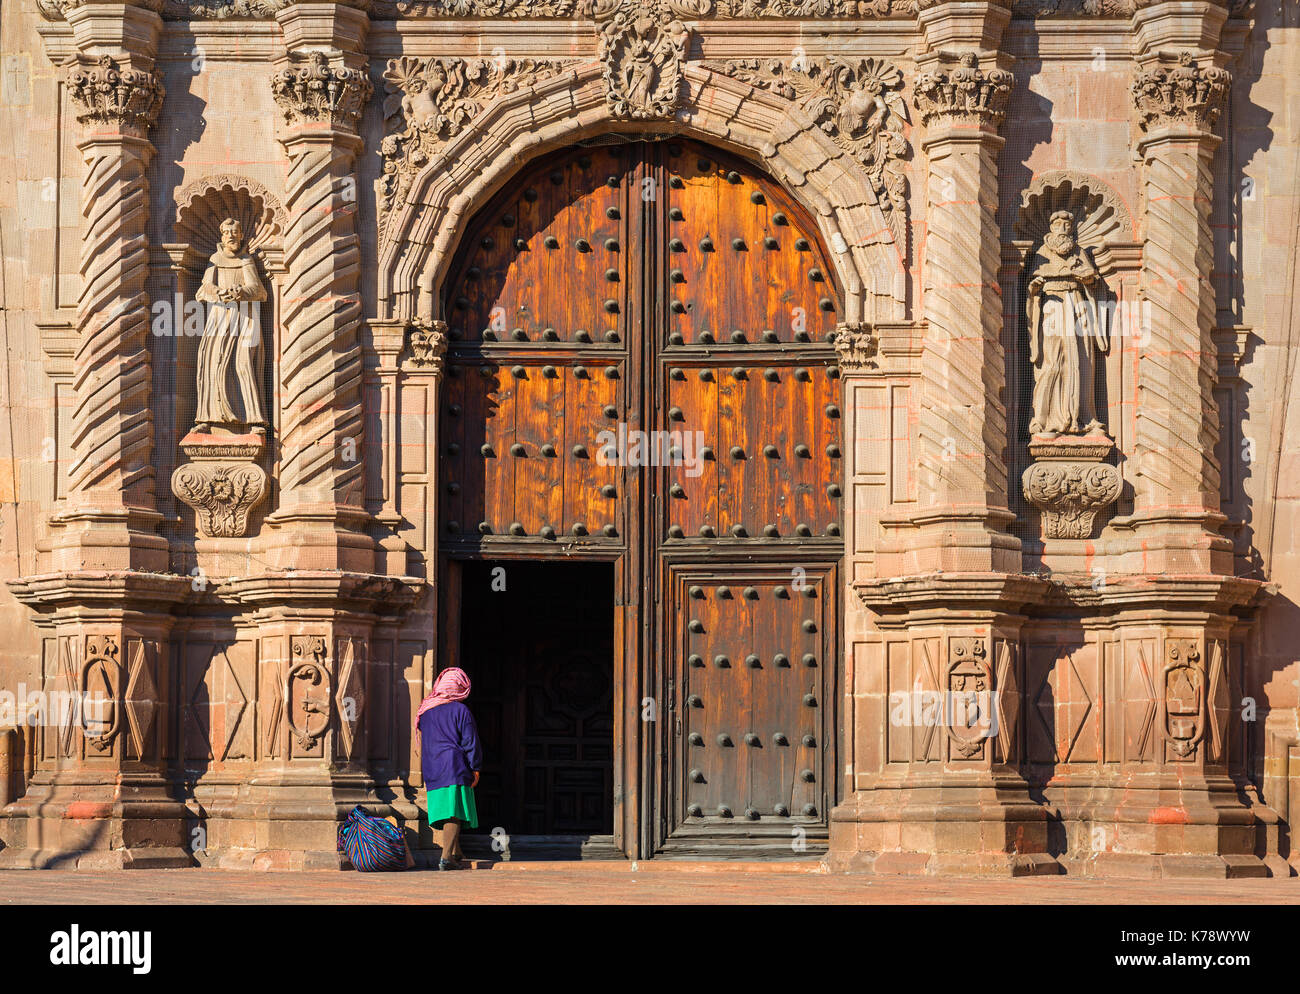 Eine indigene Frau am Eingang eines barocken Kirche in der Innenstadt von Queretaro Stadt, Mexiko. Stockfoto